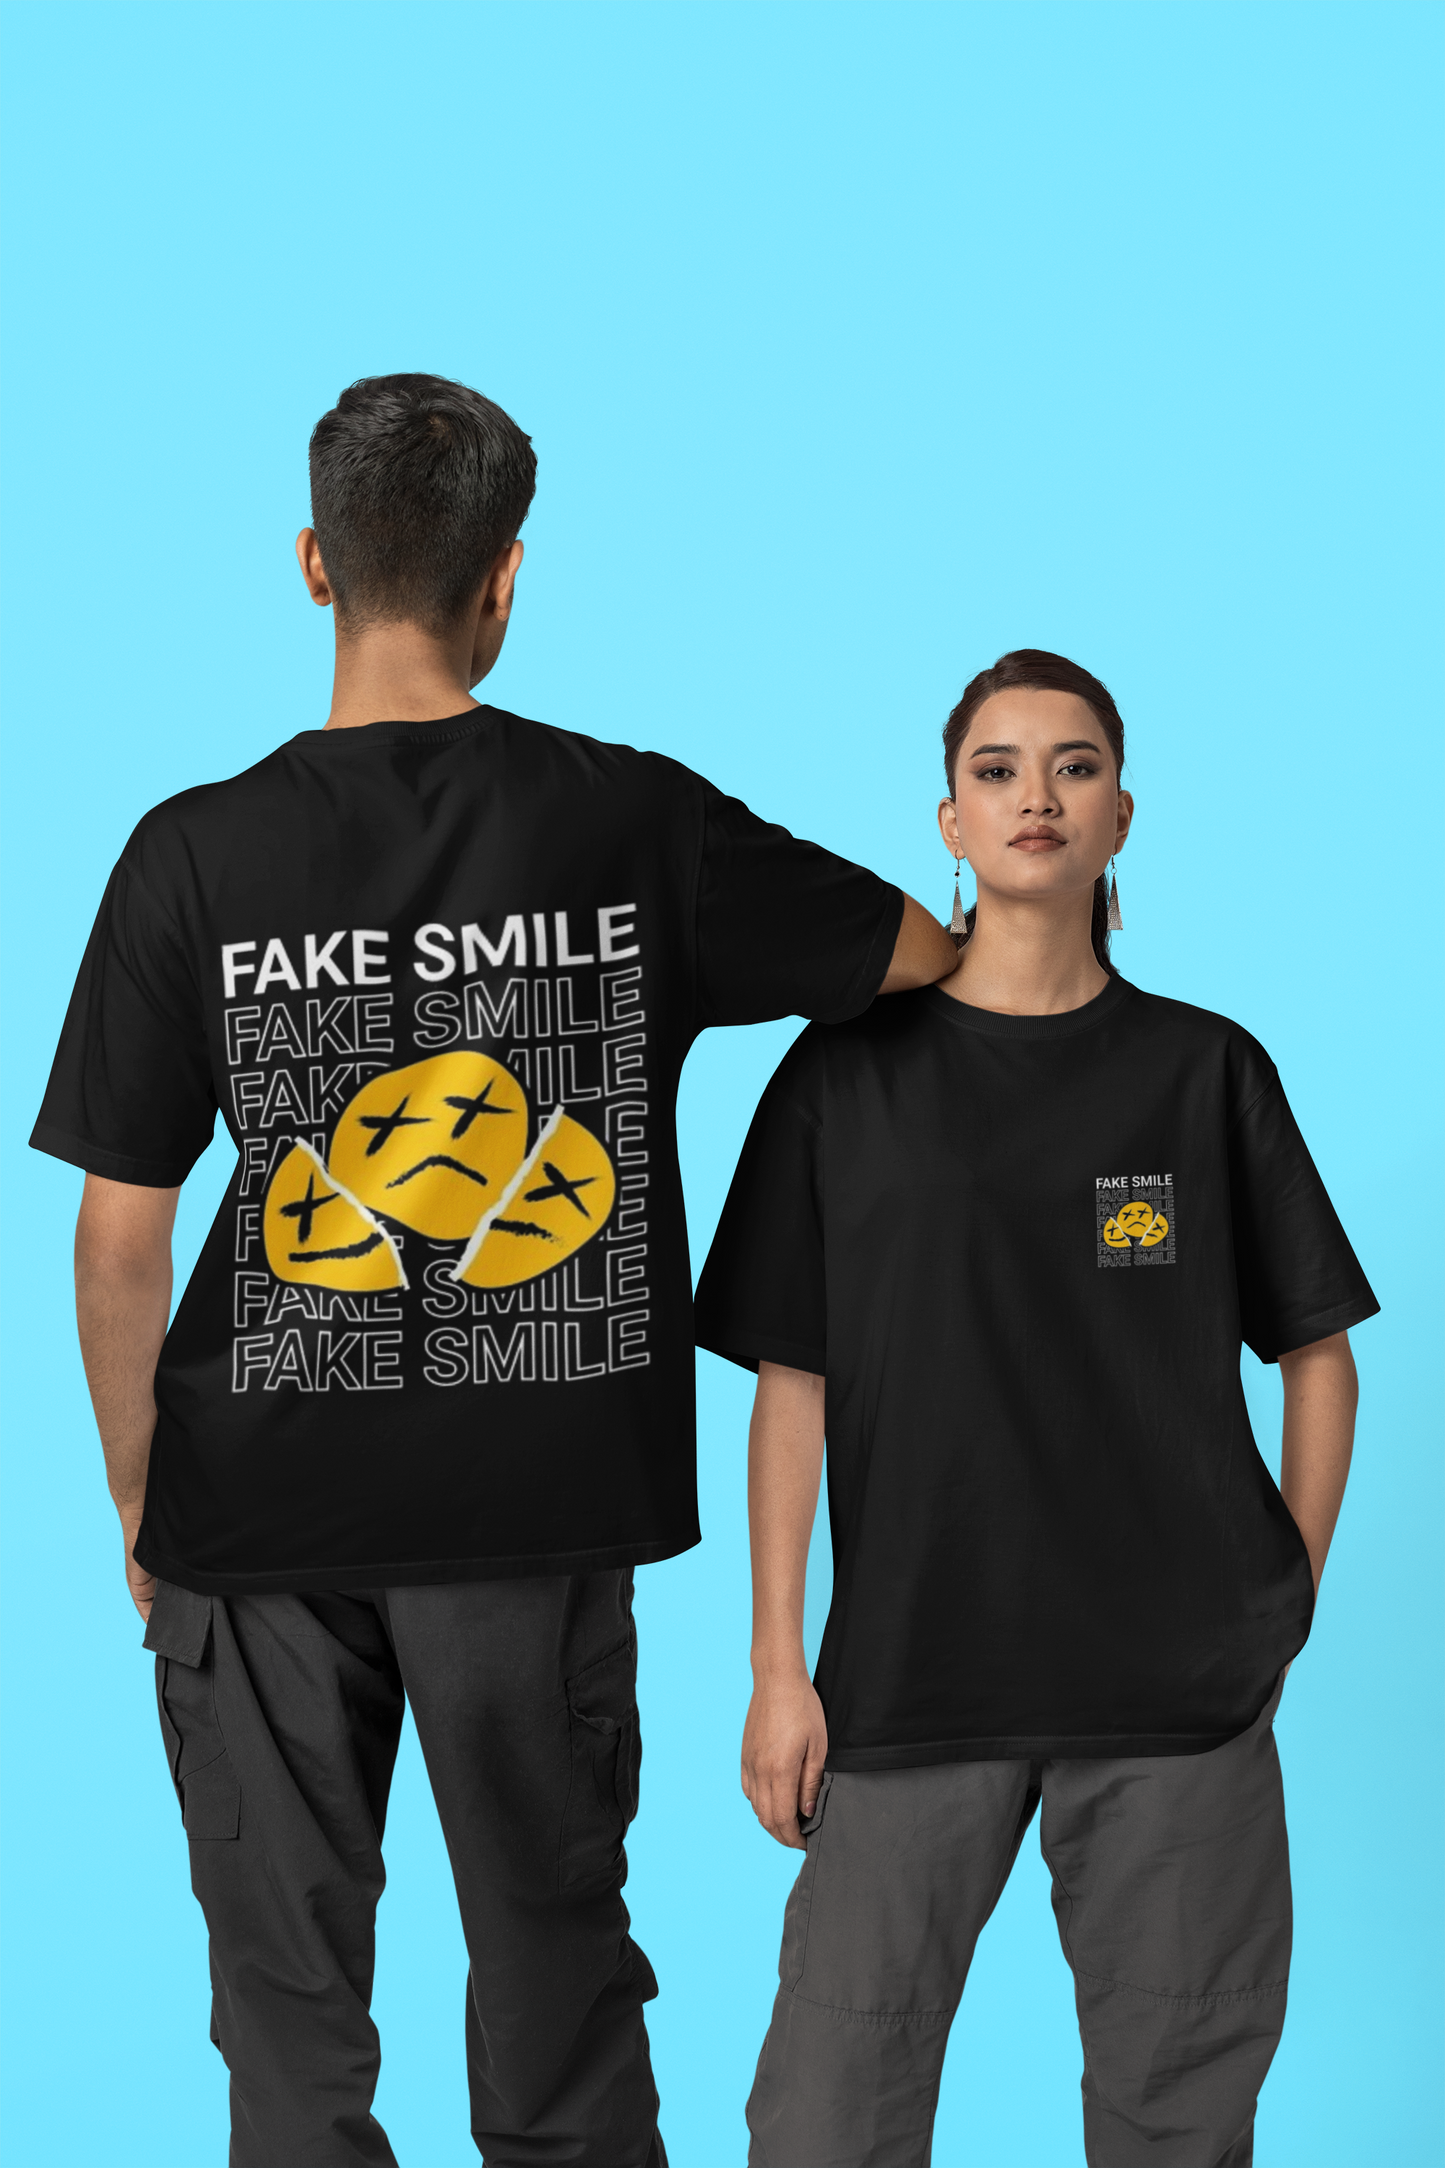 Fake smile